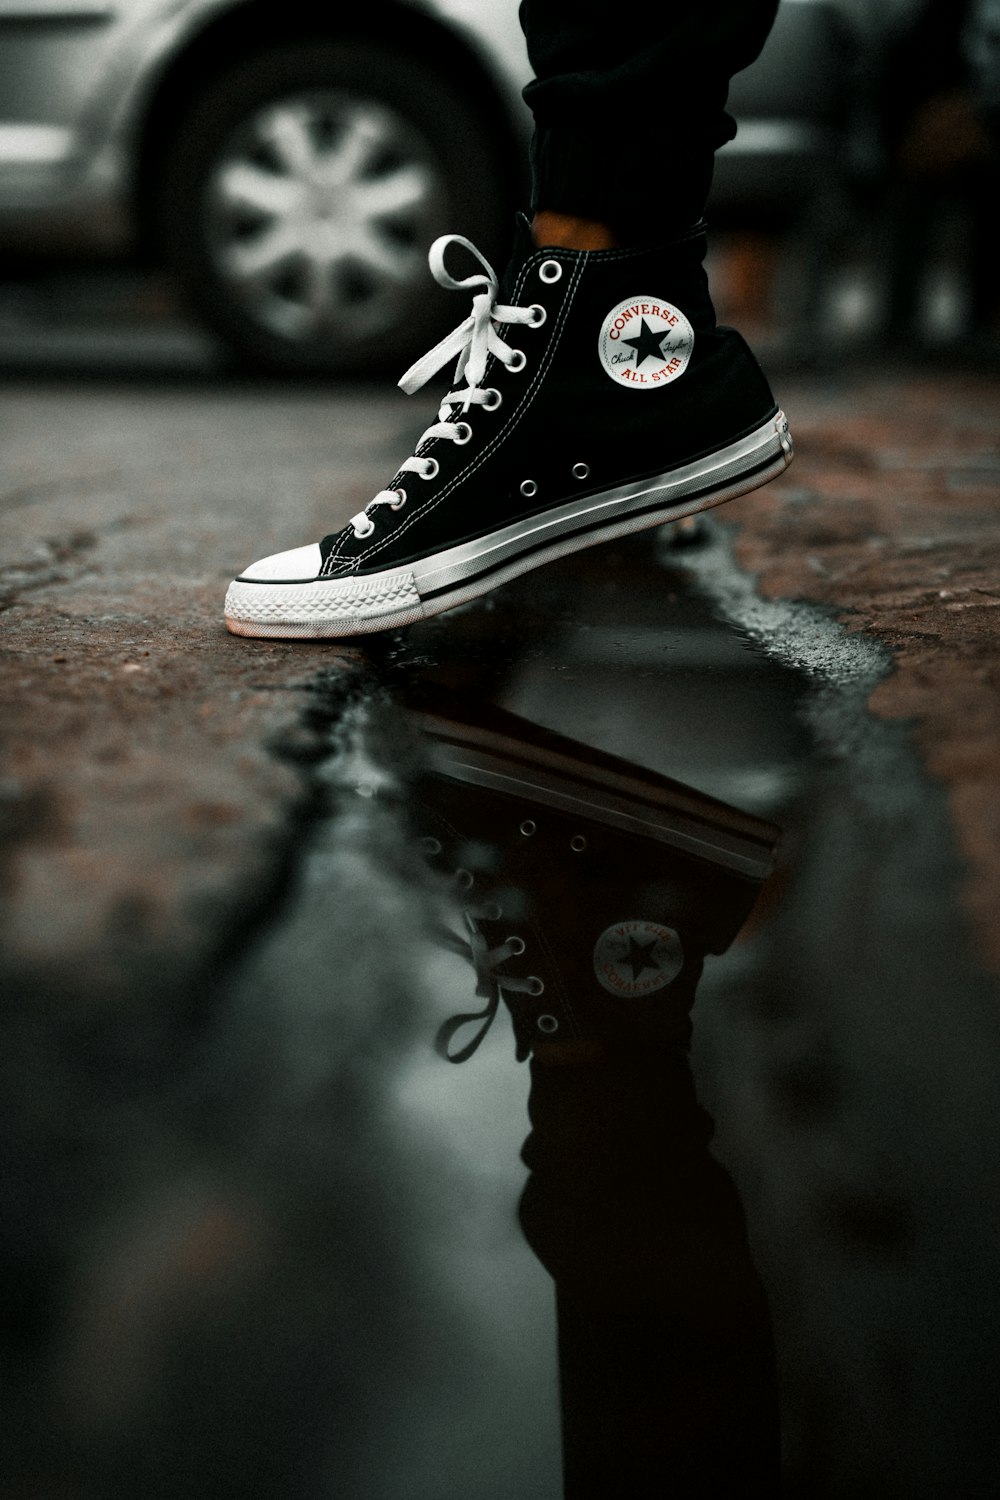 Imágenes de Zapatos Converse | imágenes gratuitas en Unsplash